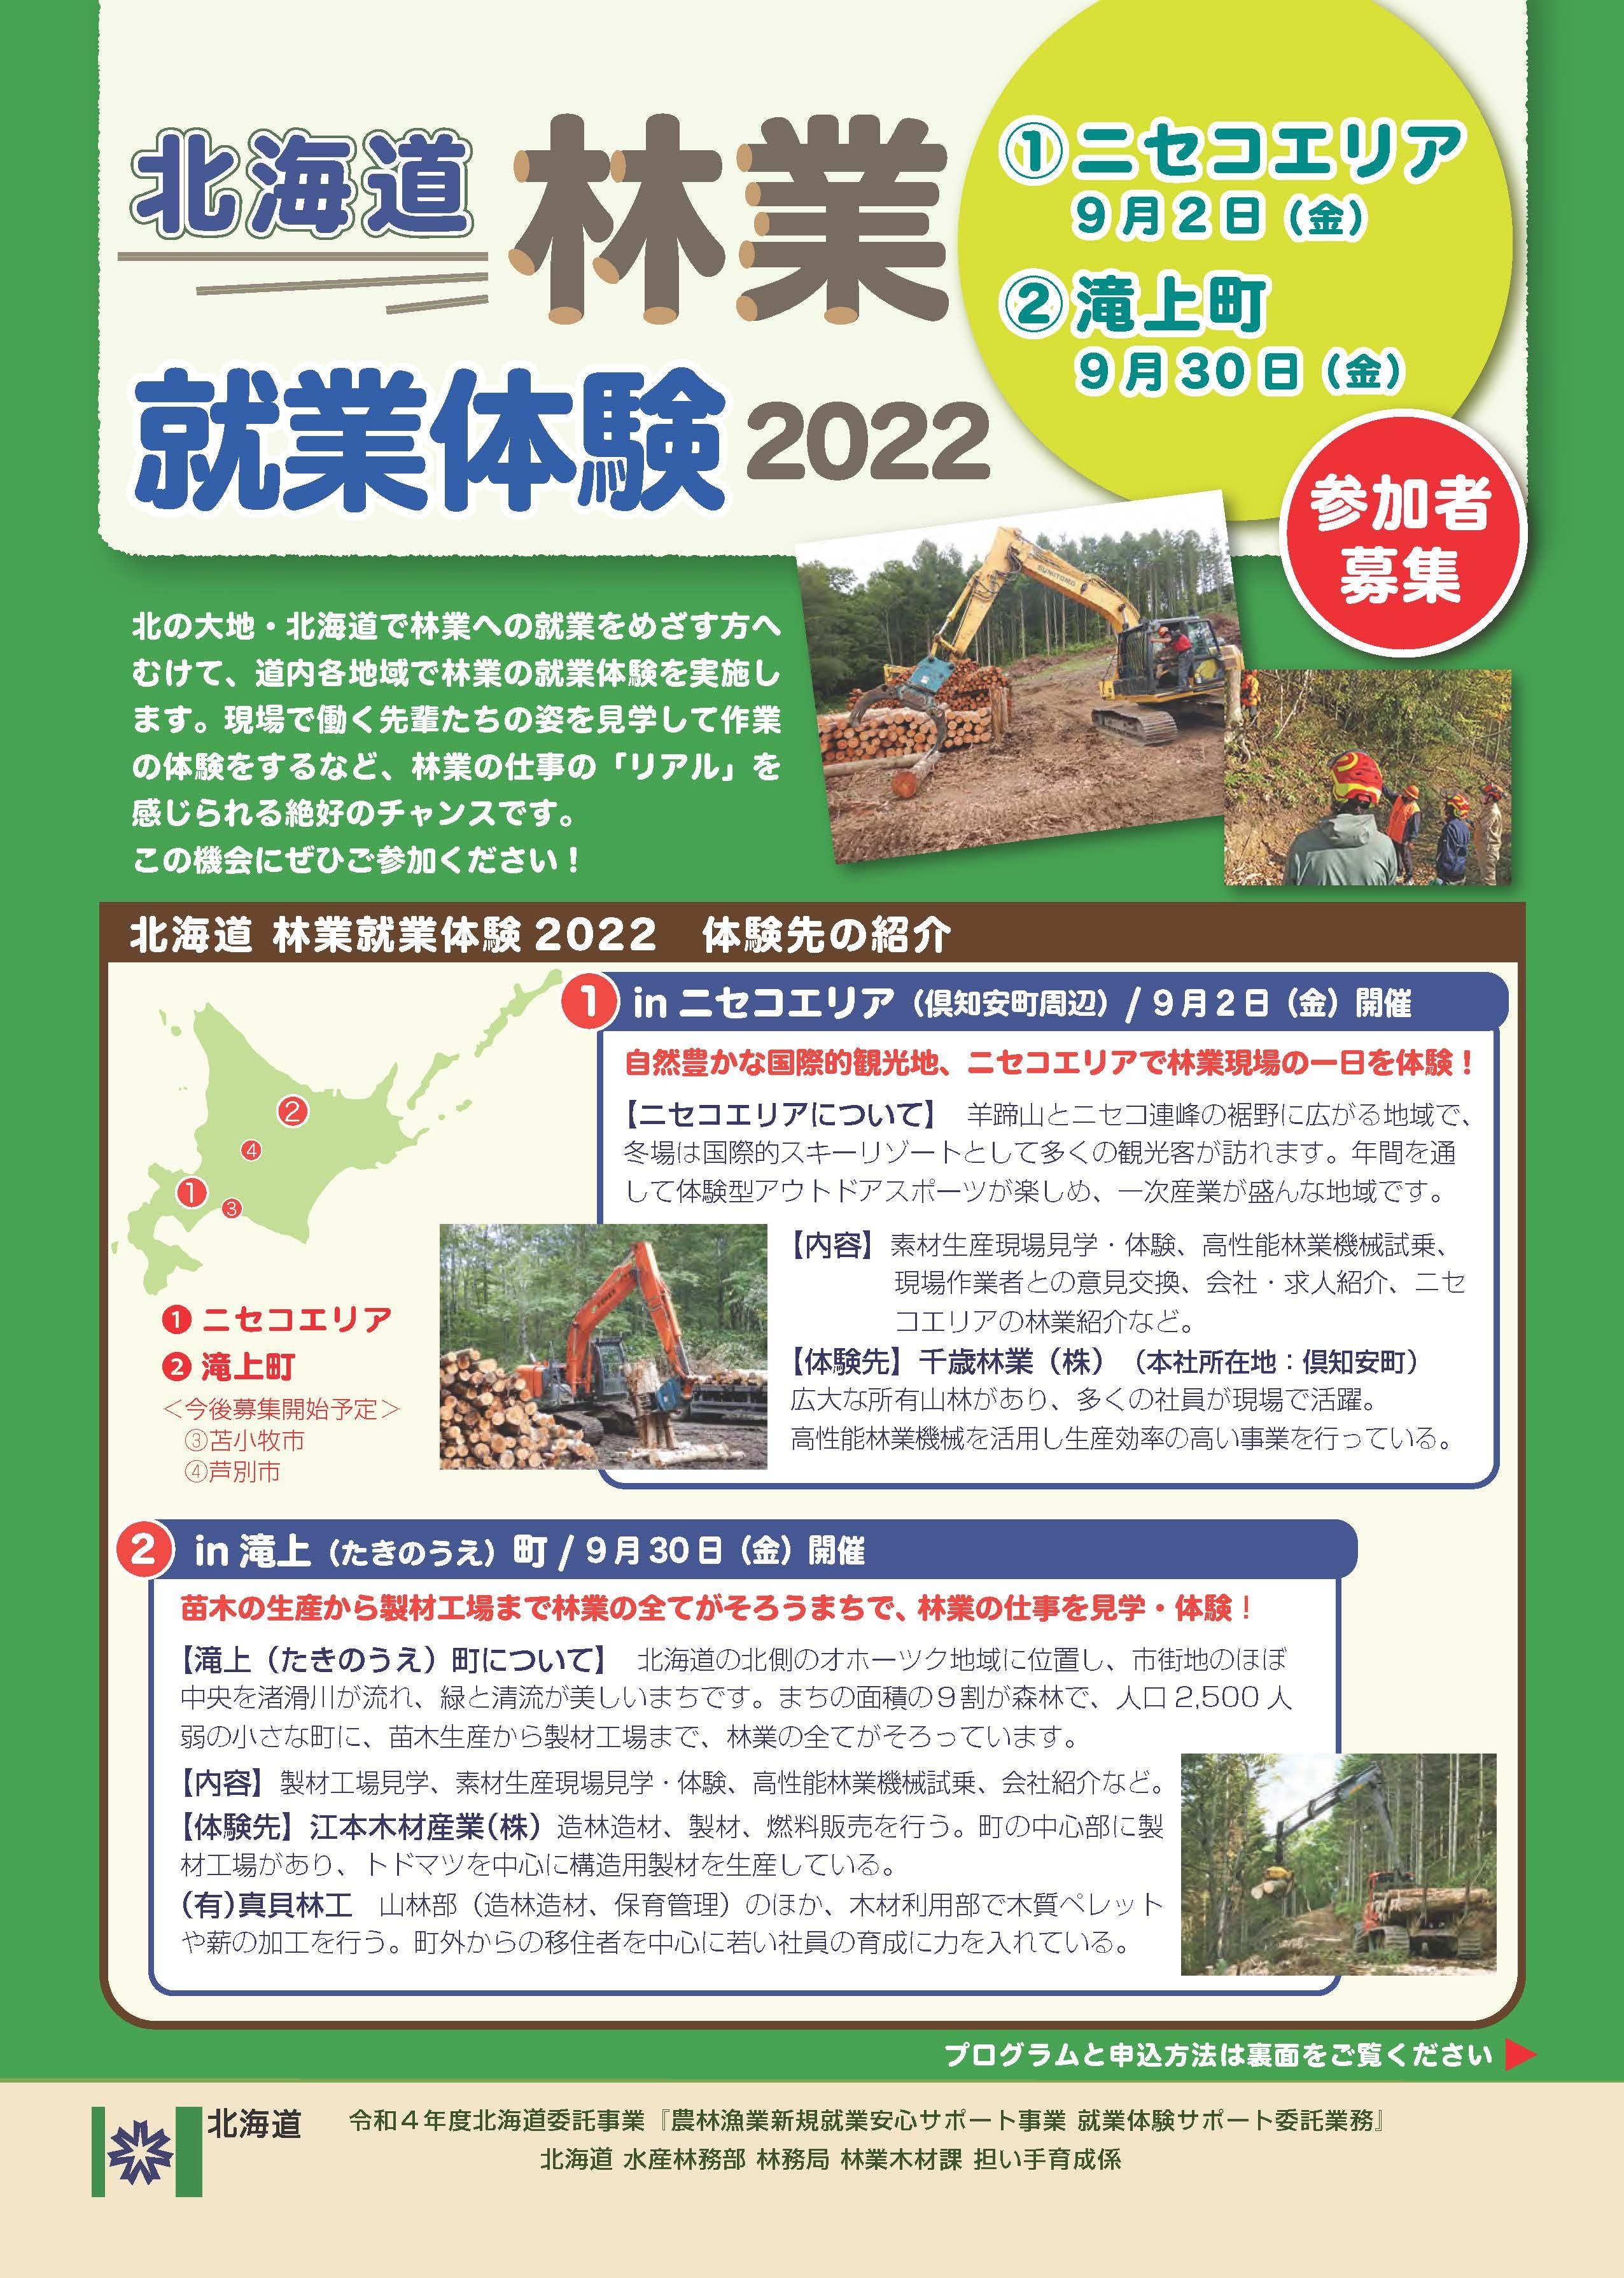 修正版 北海道林業就業体験2022_1_FIX_ページ_1 (JPG 1.32MB)